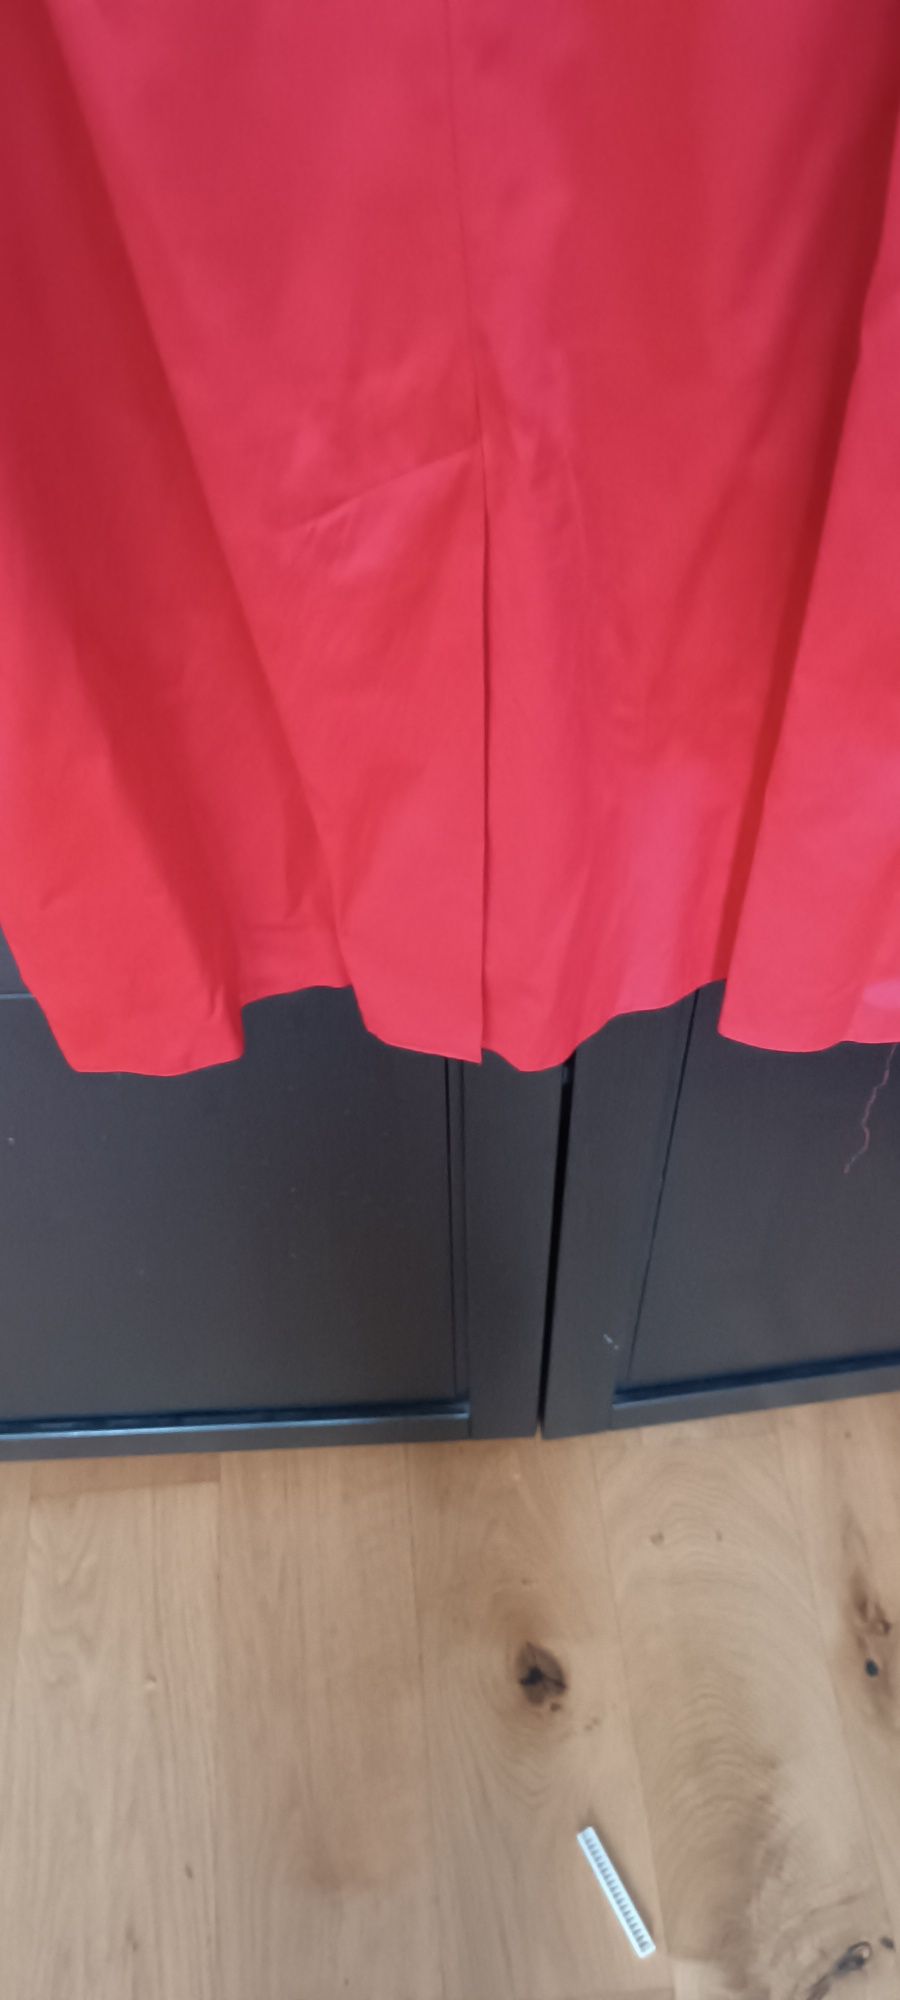 Czerwona sukienka z kokardą ślub komunia chrzciny 44 Zara reserved man